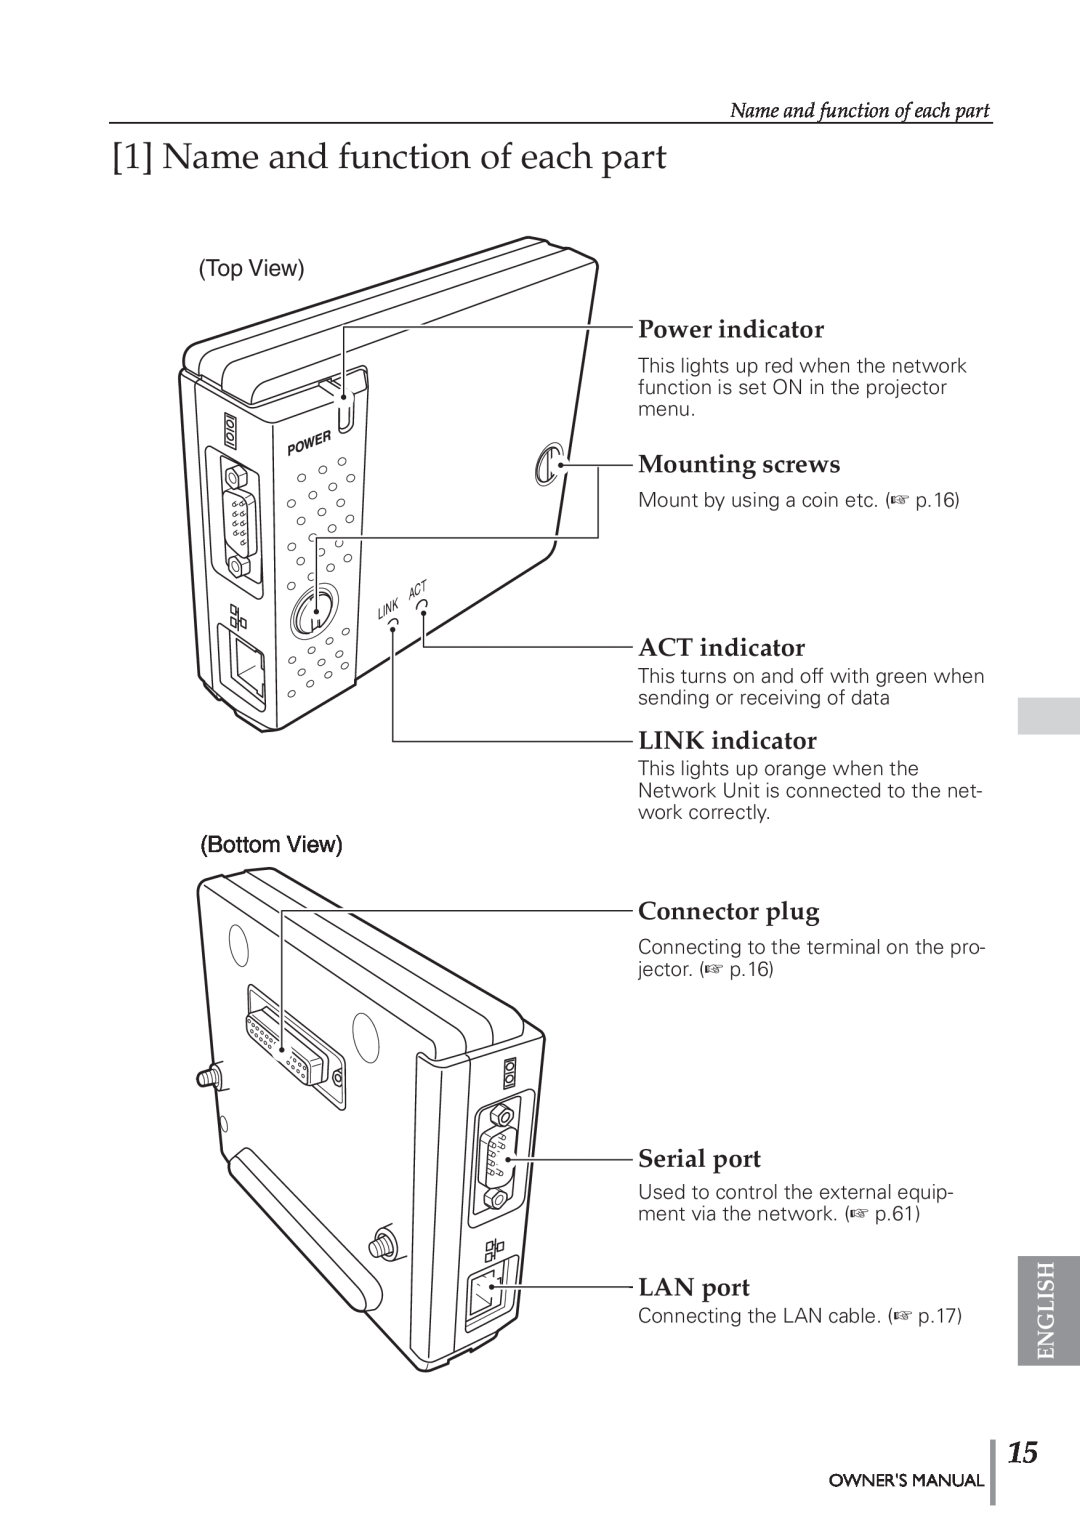 Eiki PJNET-300 Name and function of each part, Power indicator, Mounting screws, ACT indicator, LINK indicator, LAN port 